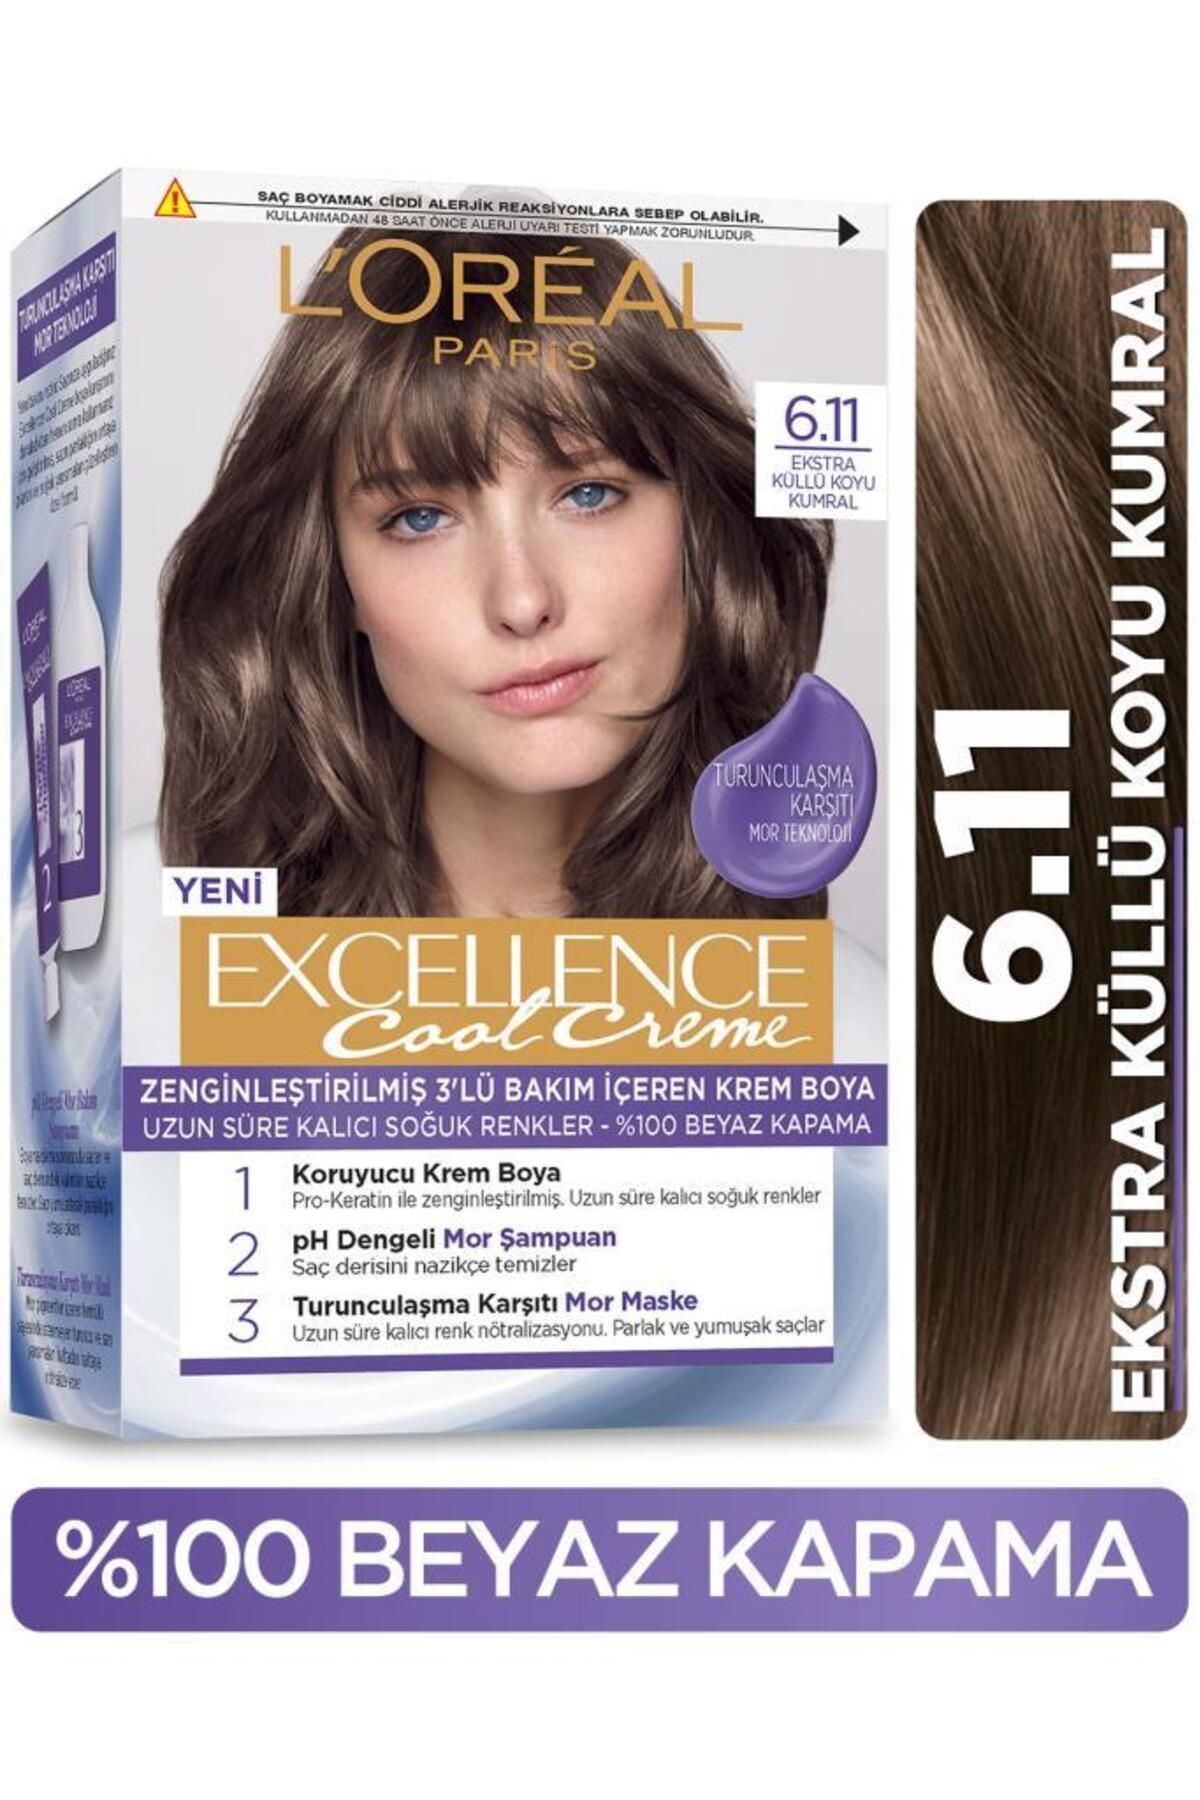 L'Oreal Paris L’oréal Paris Excellence Cool Creme Saç Boyası – 6.11 Ekstra Küllü Koyu Kumral